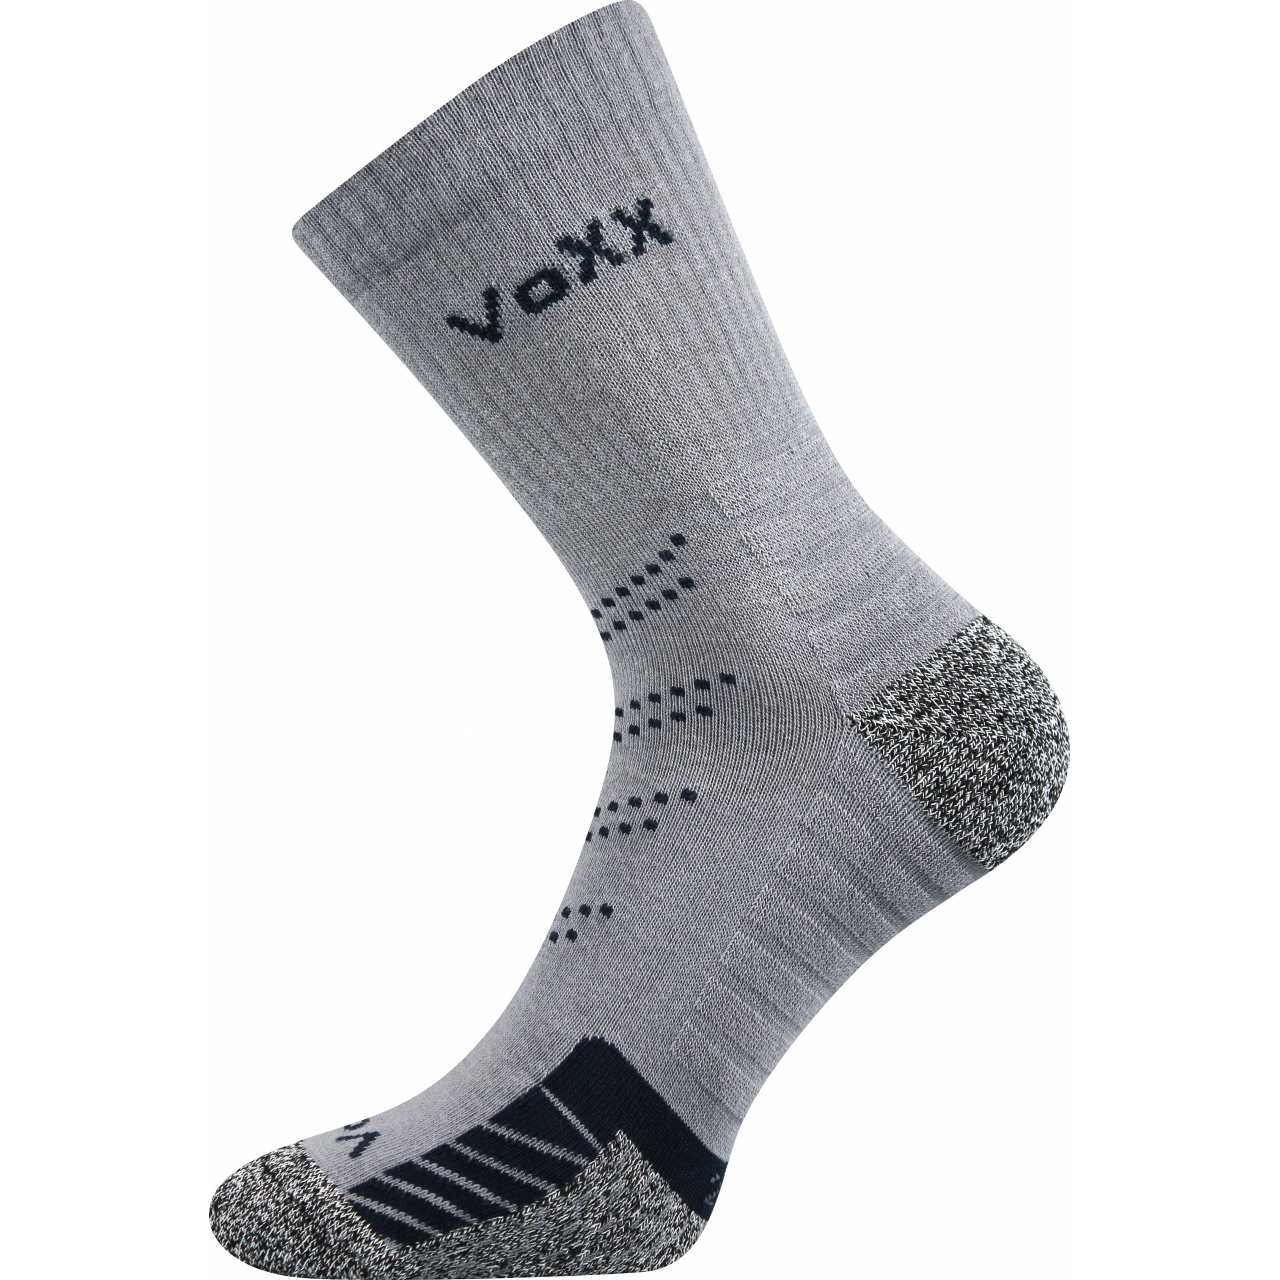 Ponožky sportovní Voxx Linea - šedé-černé, 43-46